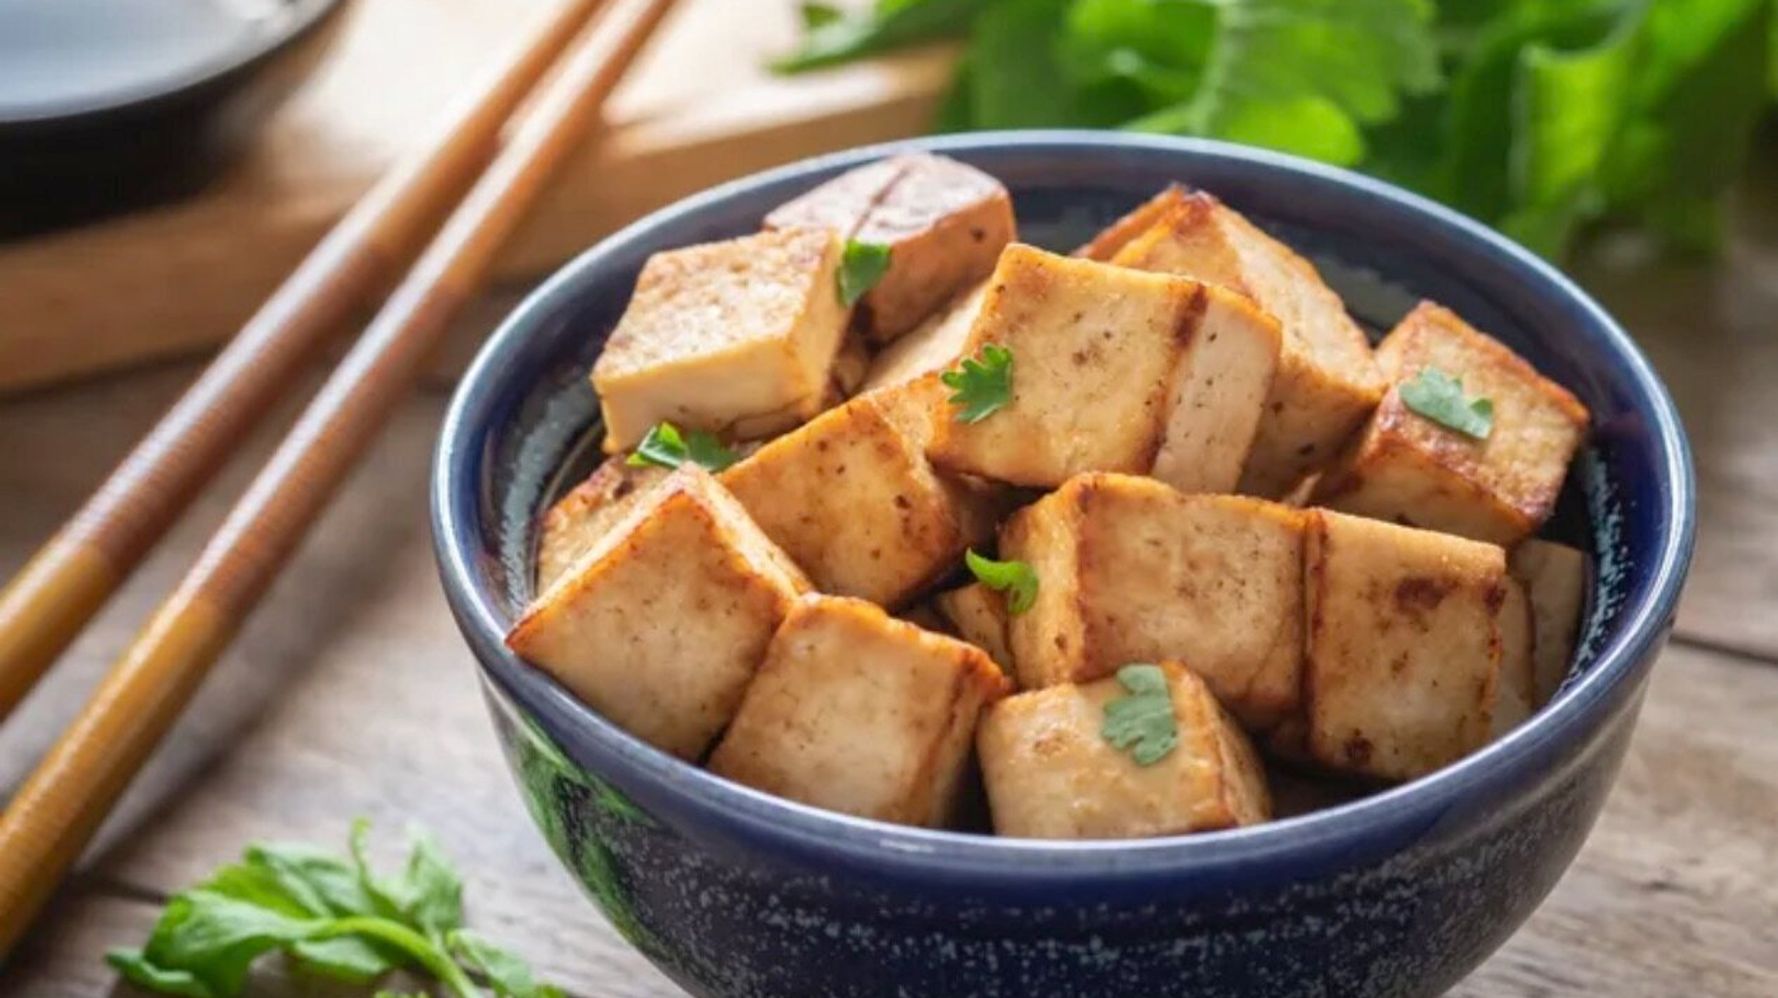 「豆腐は肉より環境に悪い」とは本当か